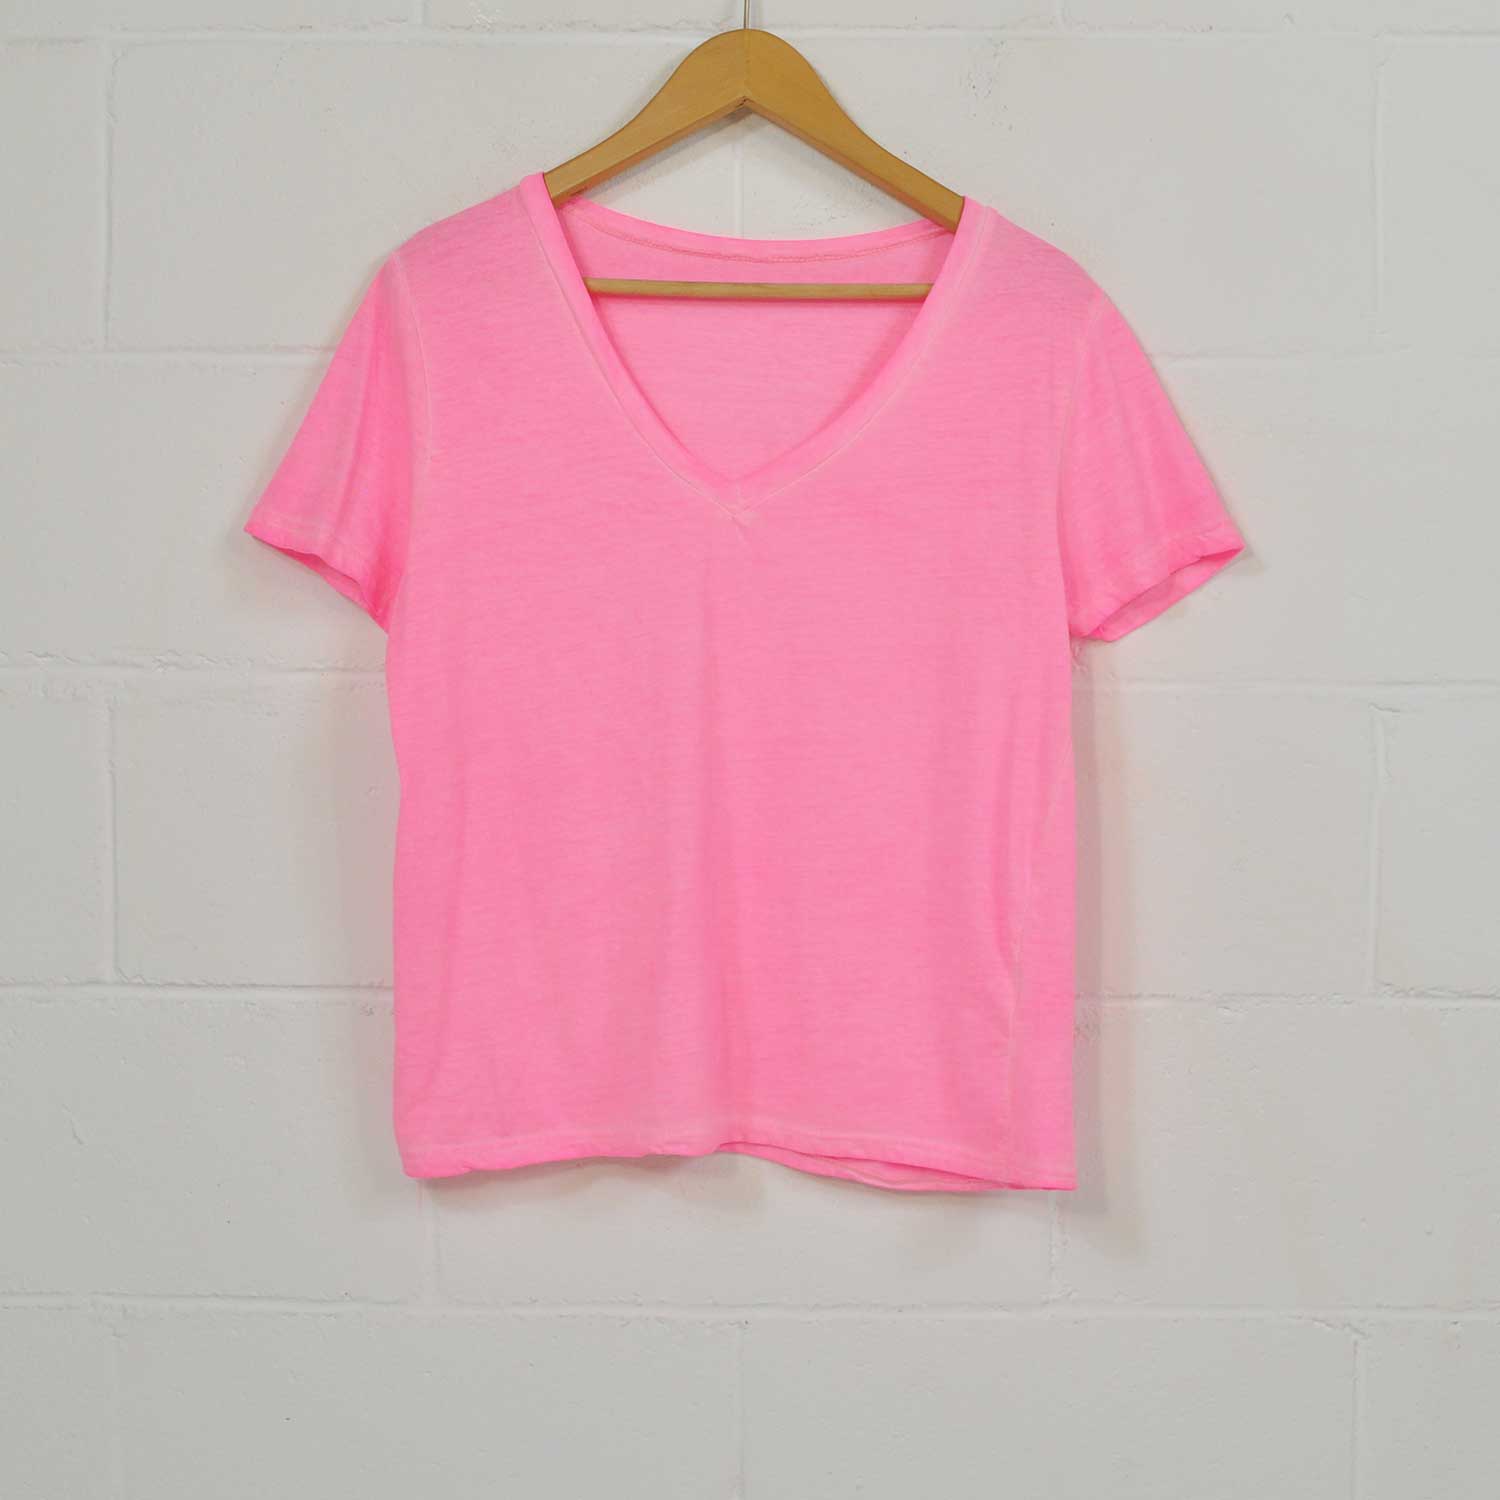 T-shirt rose fluor basique